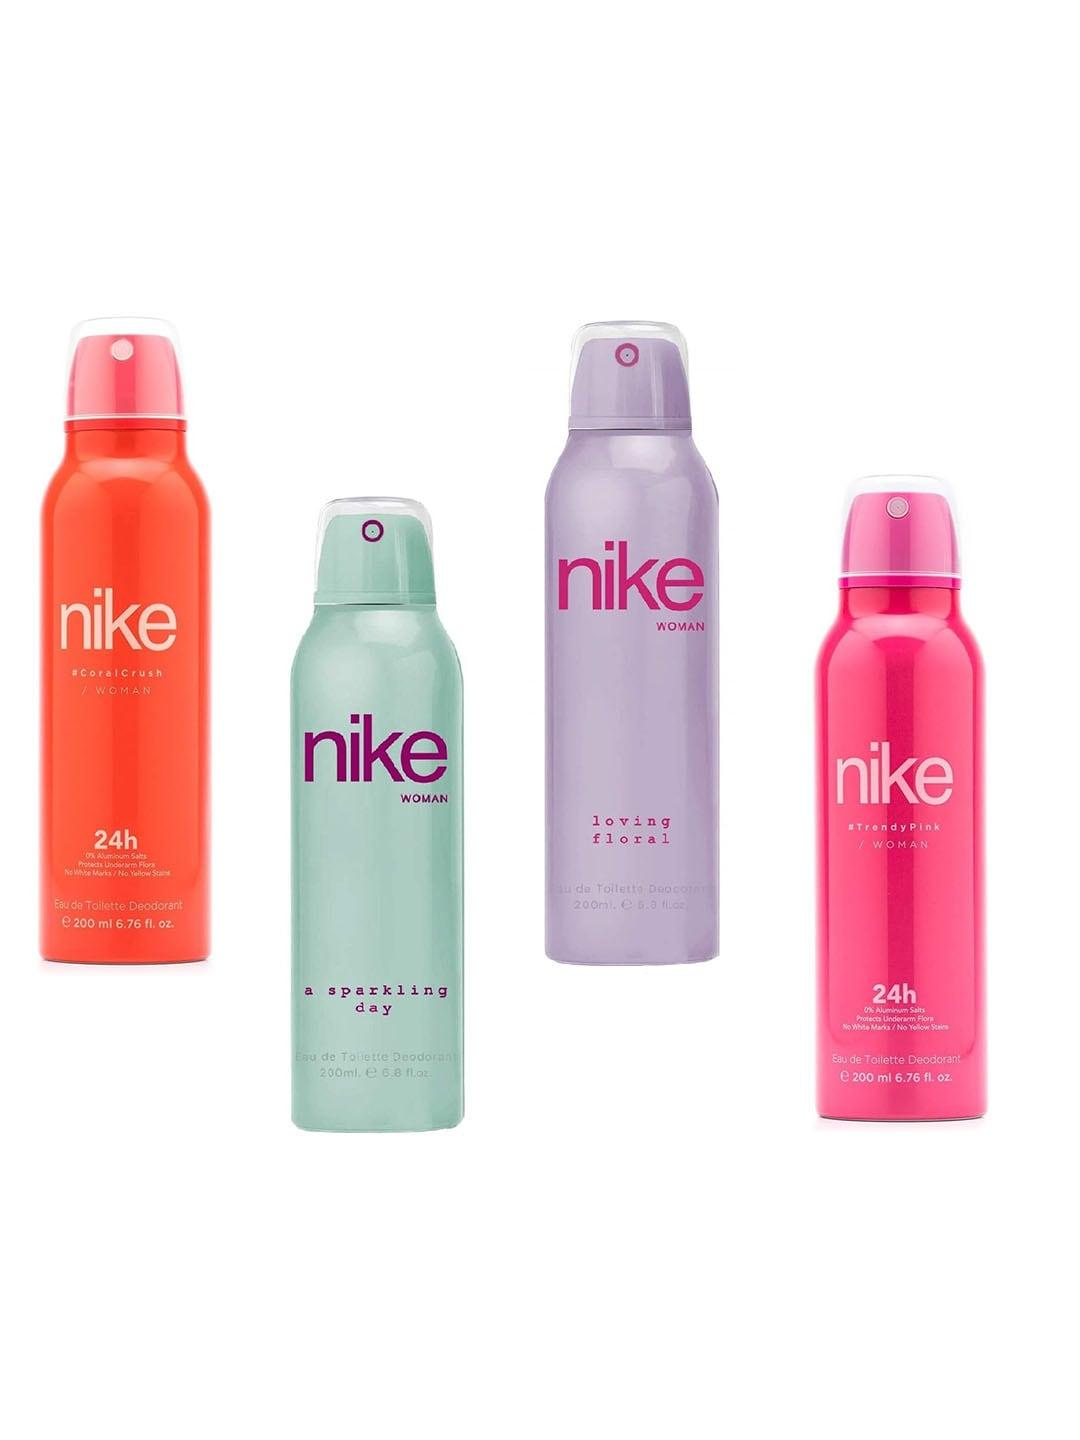 Nike Women Set of 4 Long Lasting Eau De Toilette Deodorant - 200 ml each